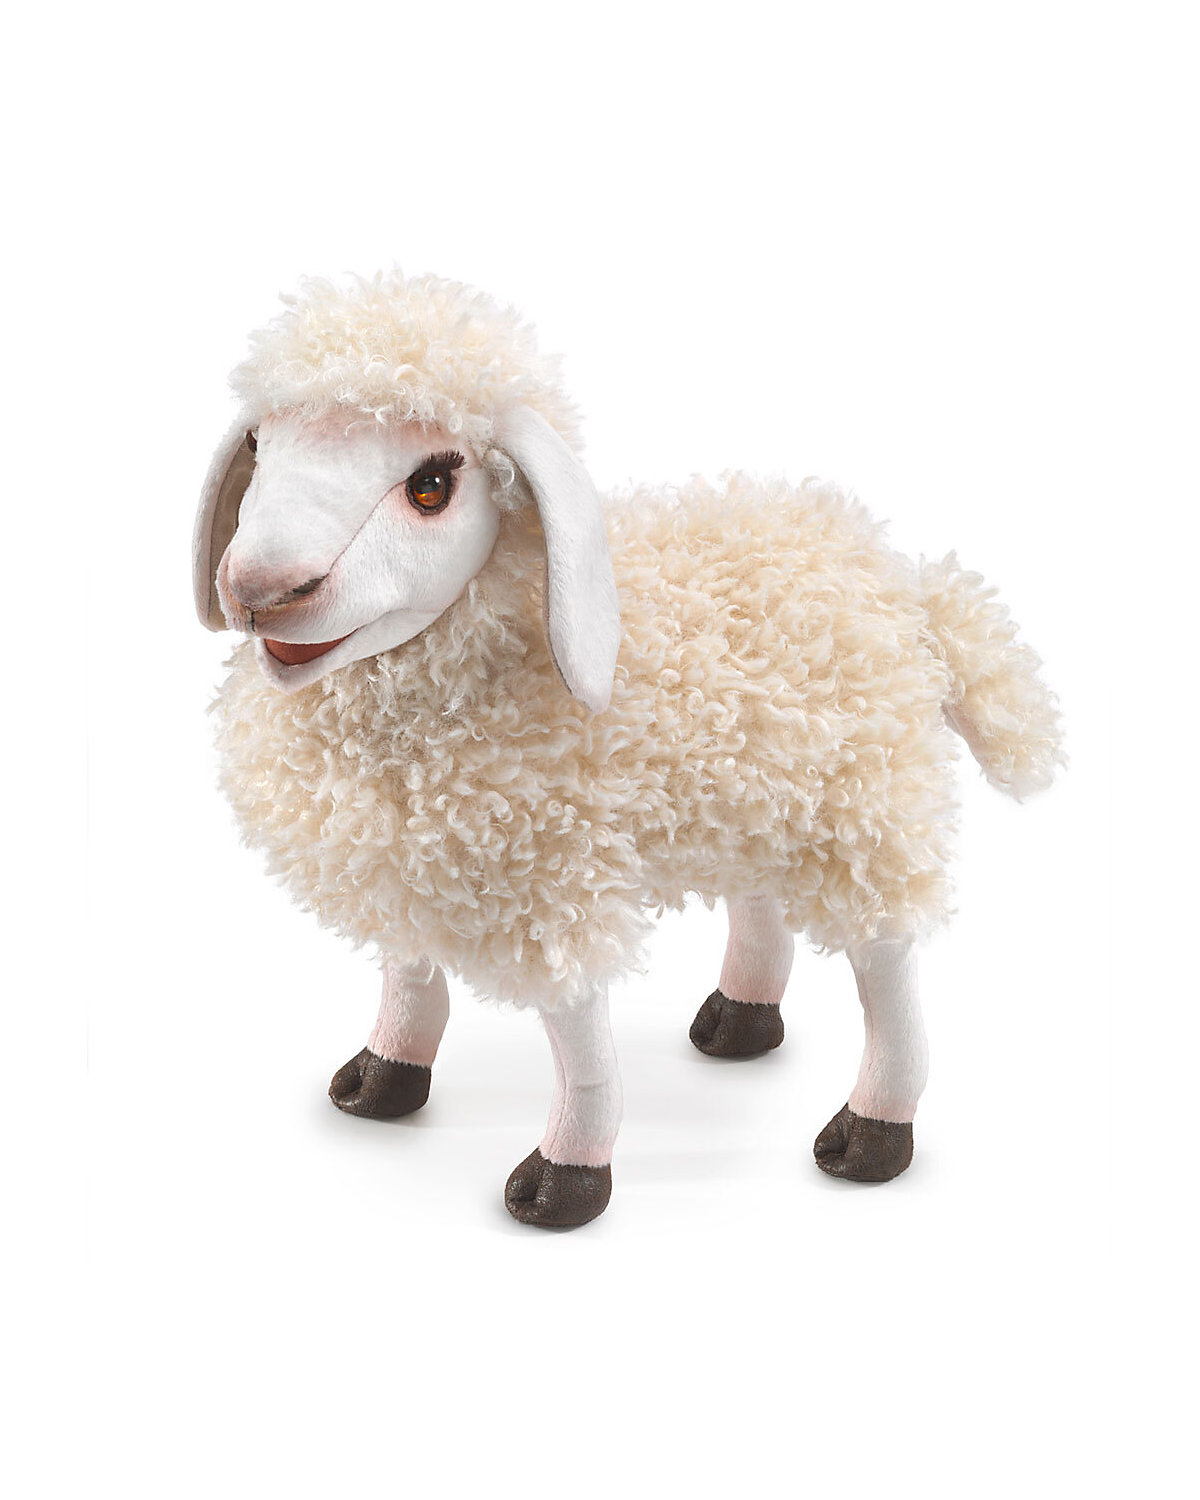 Folkmanis Handpuppe Wolliges Schaf / Wooly Sheep